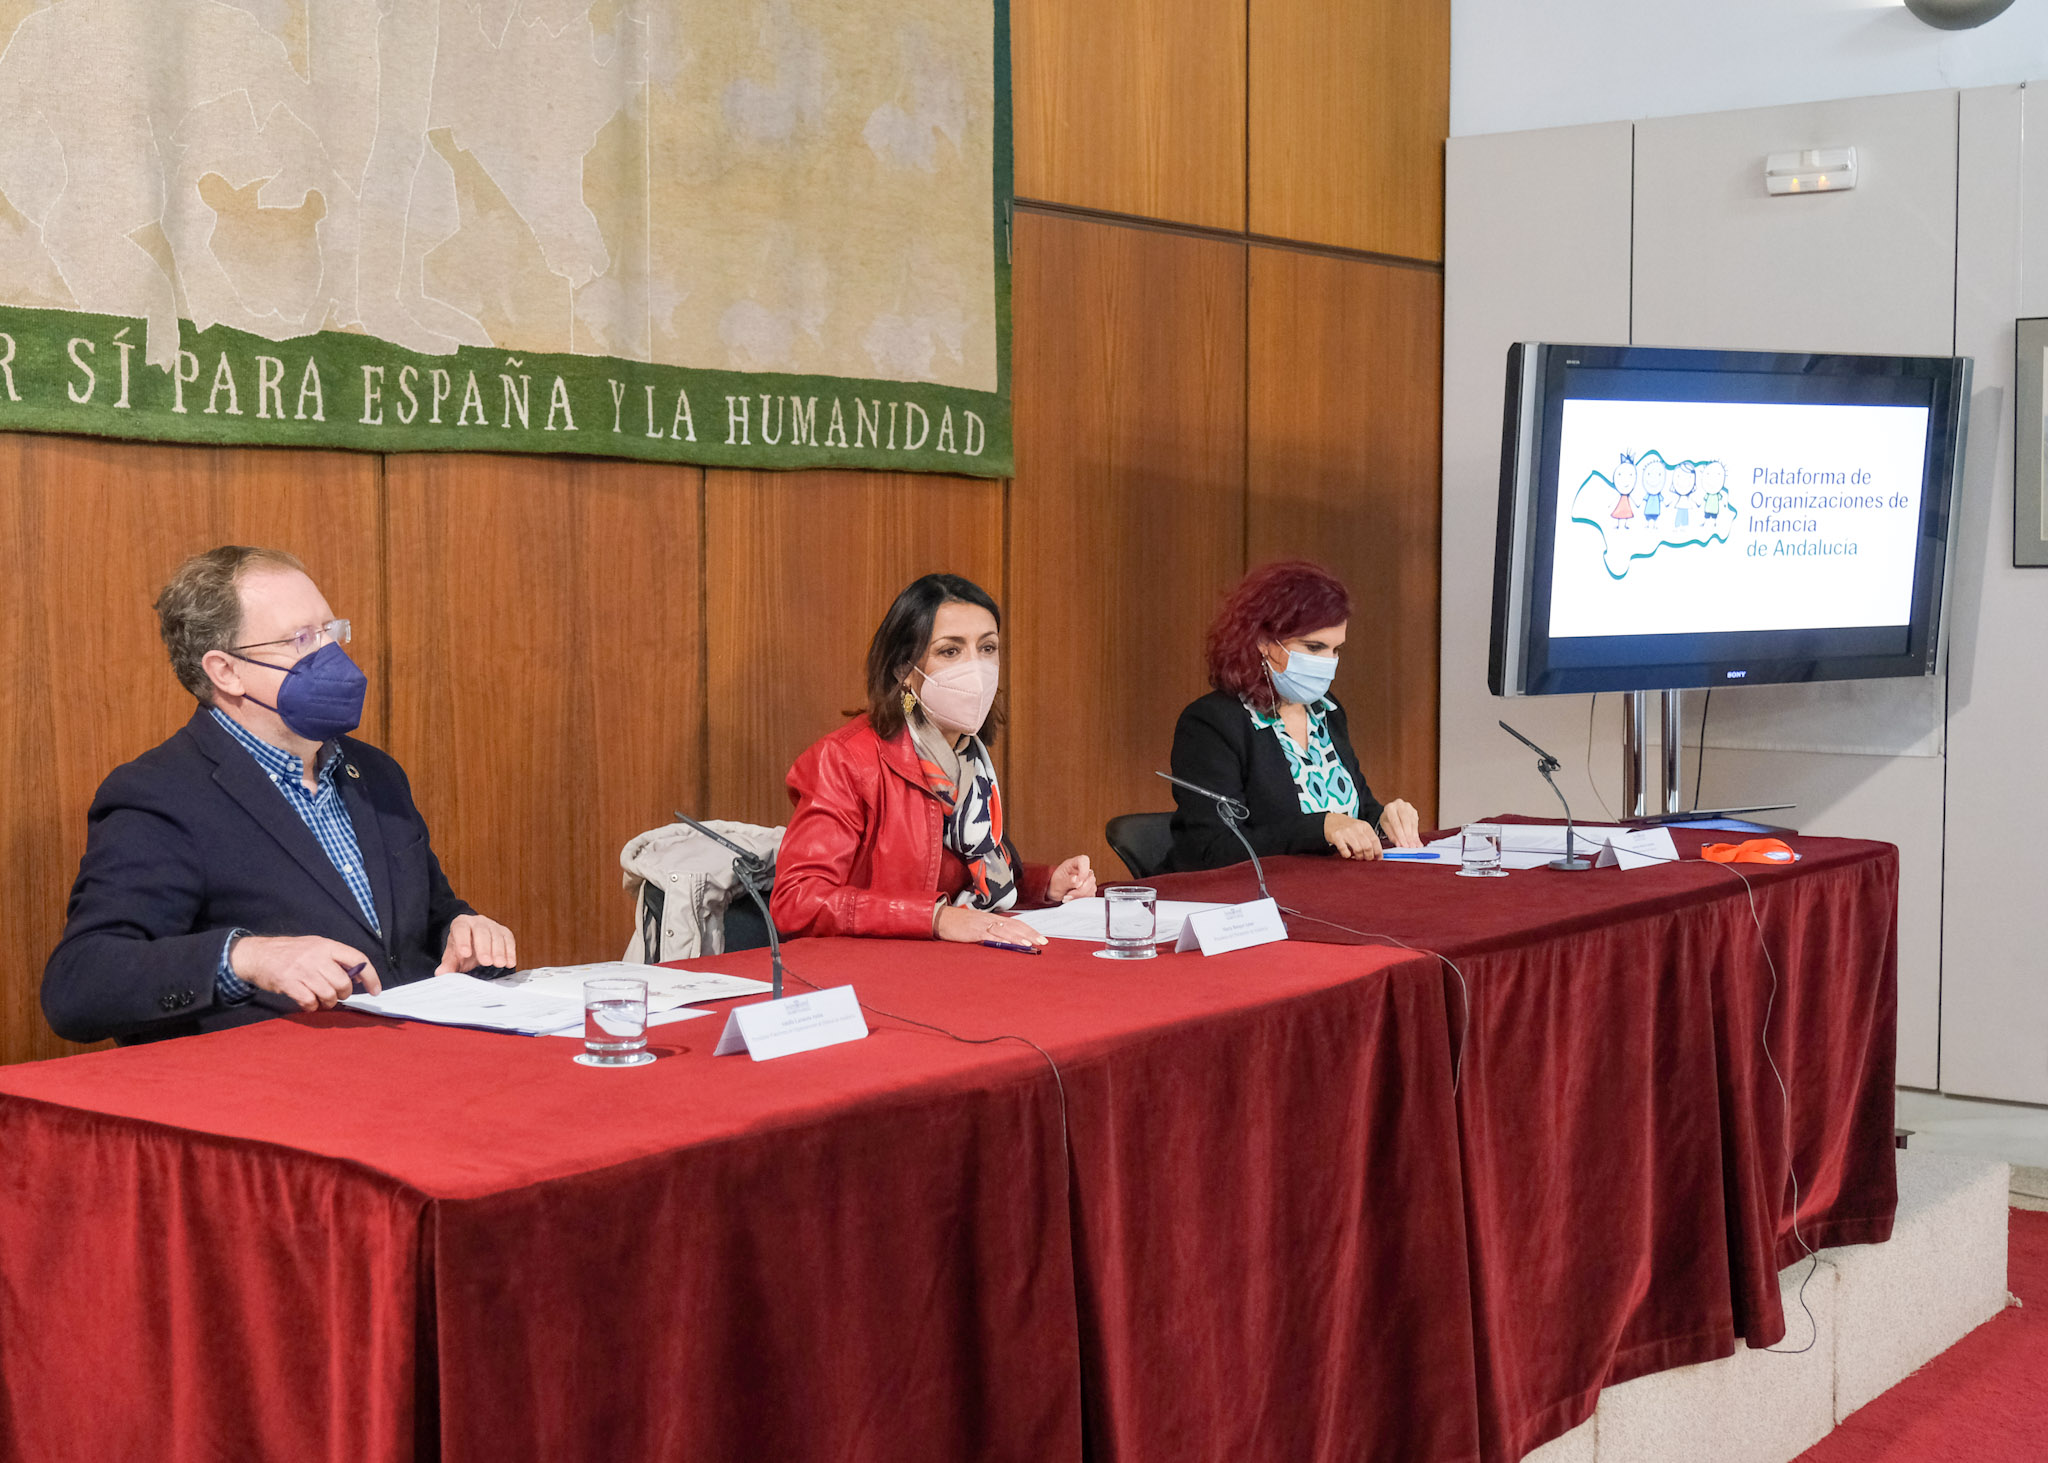   La presidenta del Parlamento de Andalucía, Marta Bosquet, con la Plataforma de Organizaciones de Infancia de Andalucía 